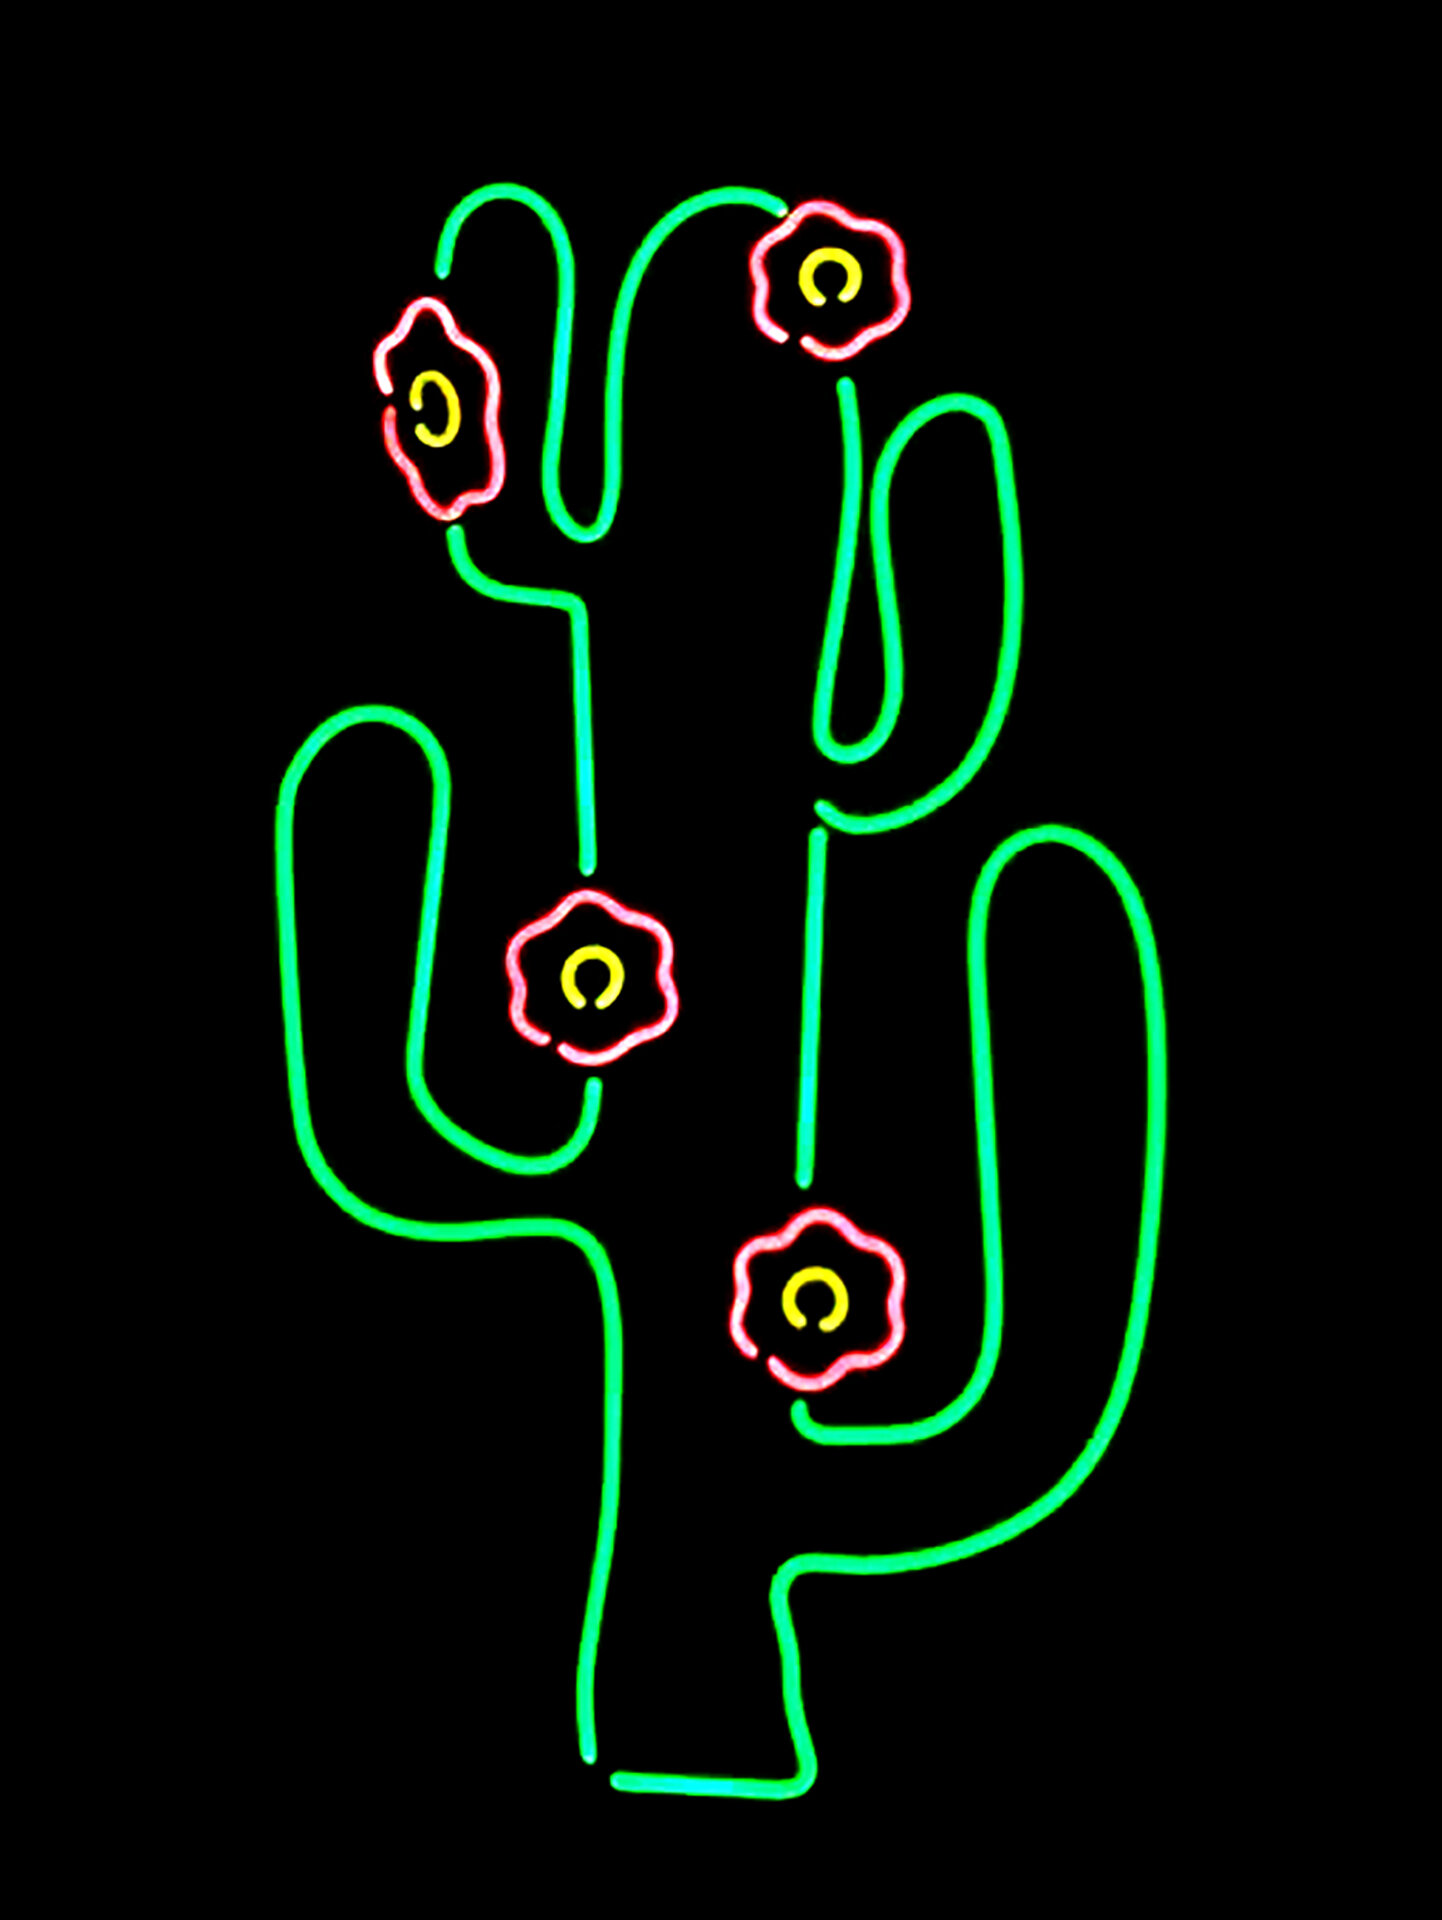 cactus 2.jpg